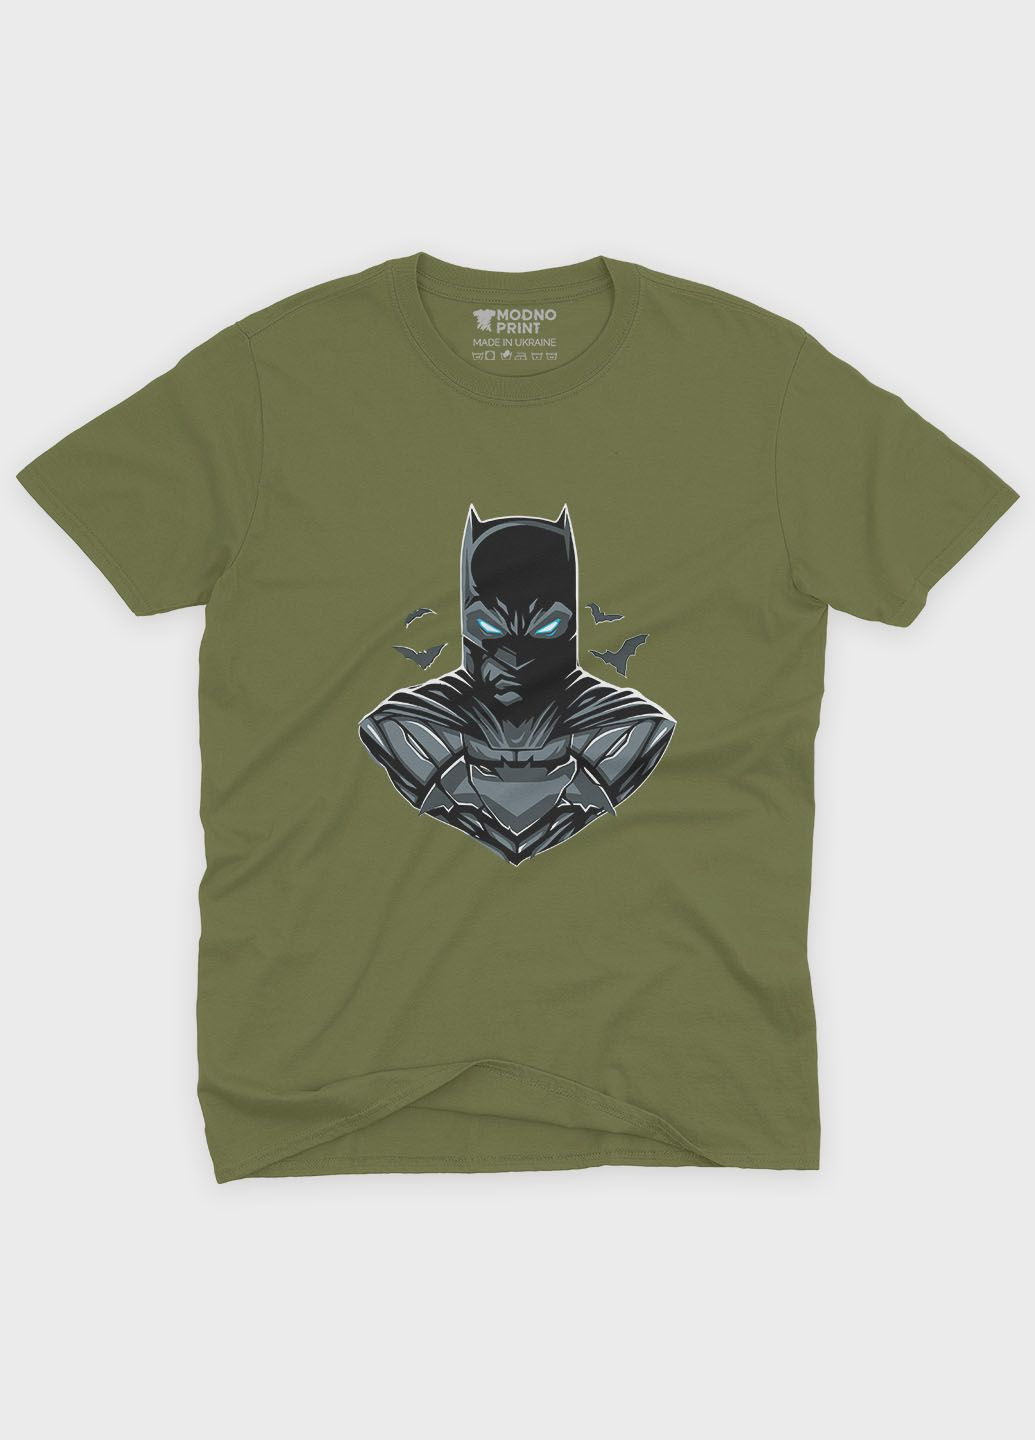 Хаки (оливковая) мужская футболка с принтом супергероя - бэтмен (ts001-1-hgr-006-003-045) Modno